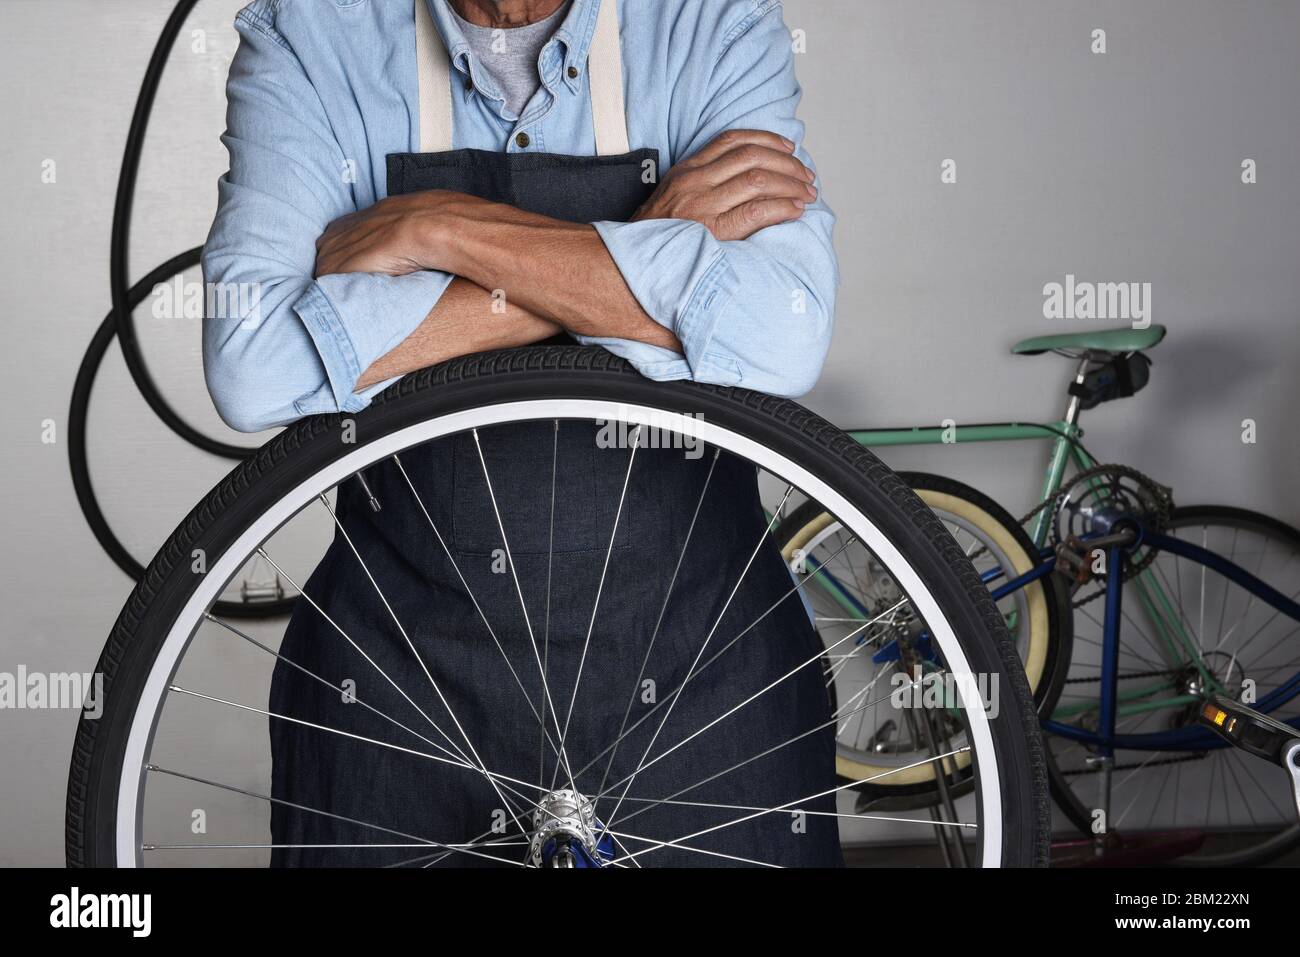 Ein Fahrradreparaturmann steht hinter dem Rad eines Fahrrads in seinem Laden. Der Mensch ist mit gefalteten Armen nicht erkennbar. Stockfoto